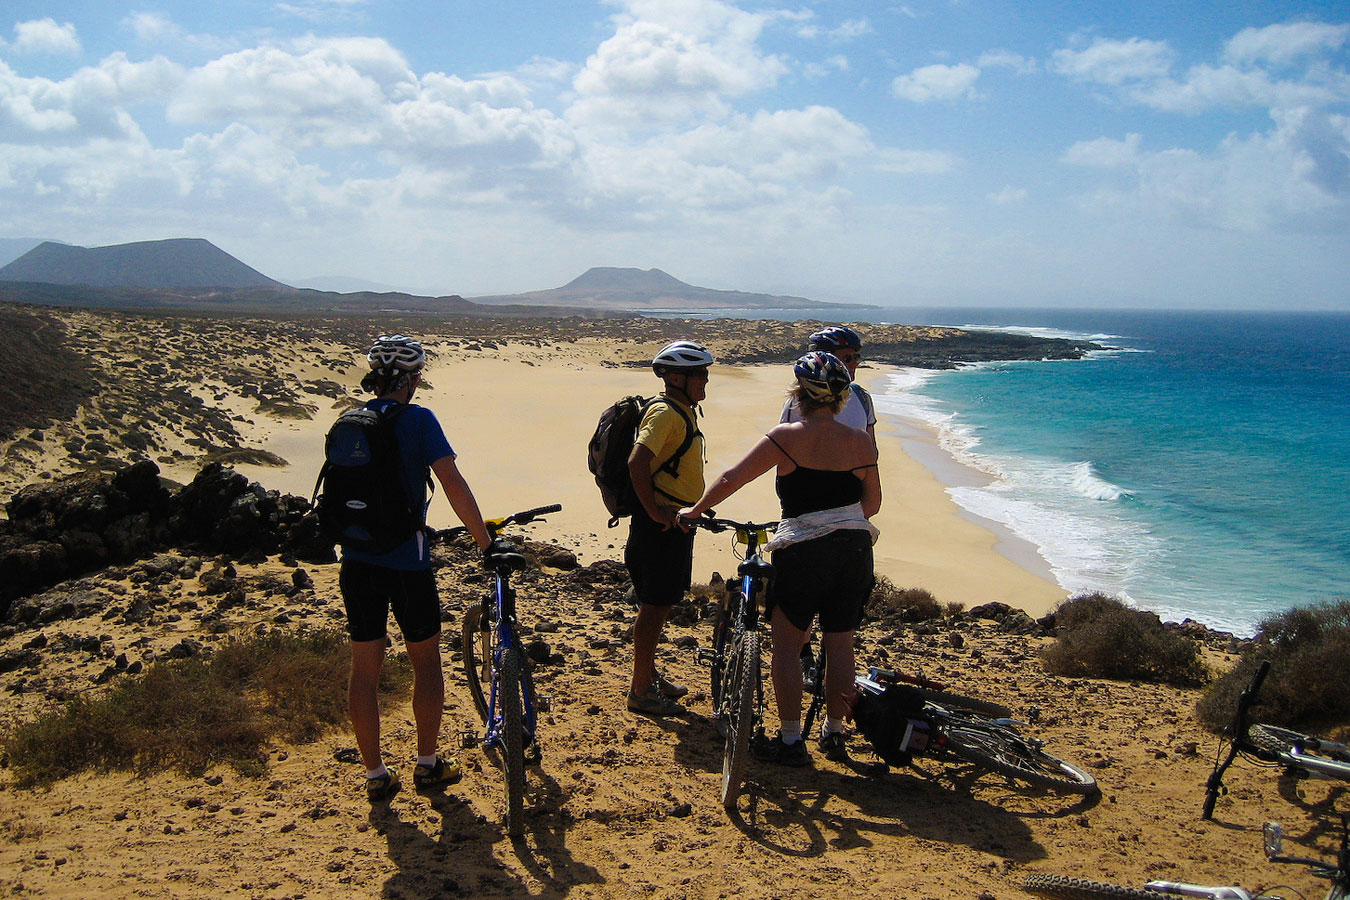 Cycling in La Graciosa island